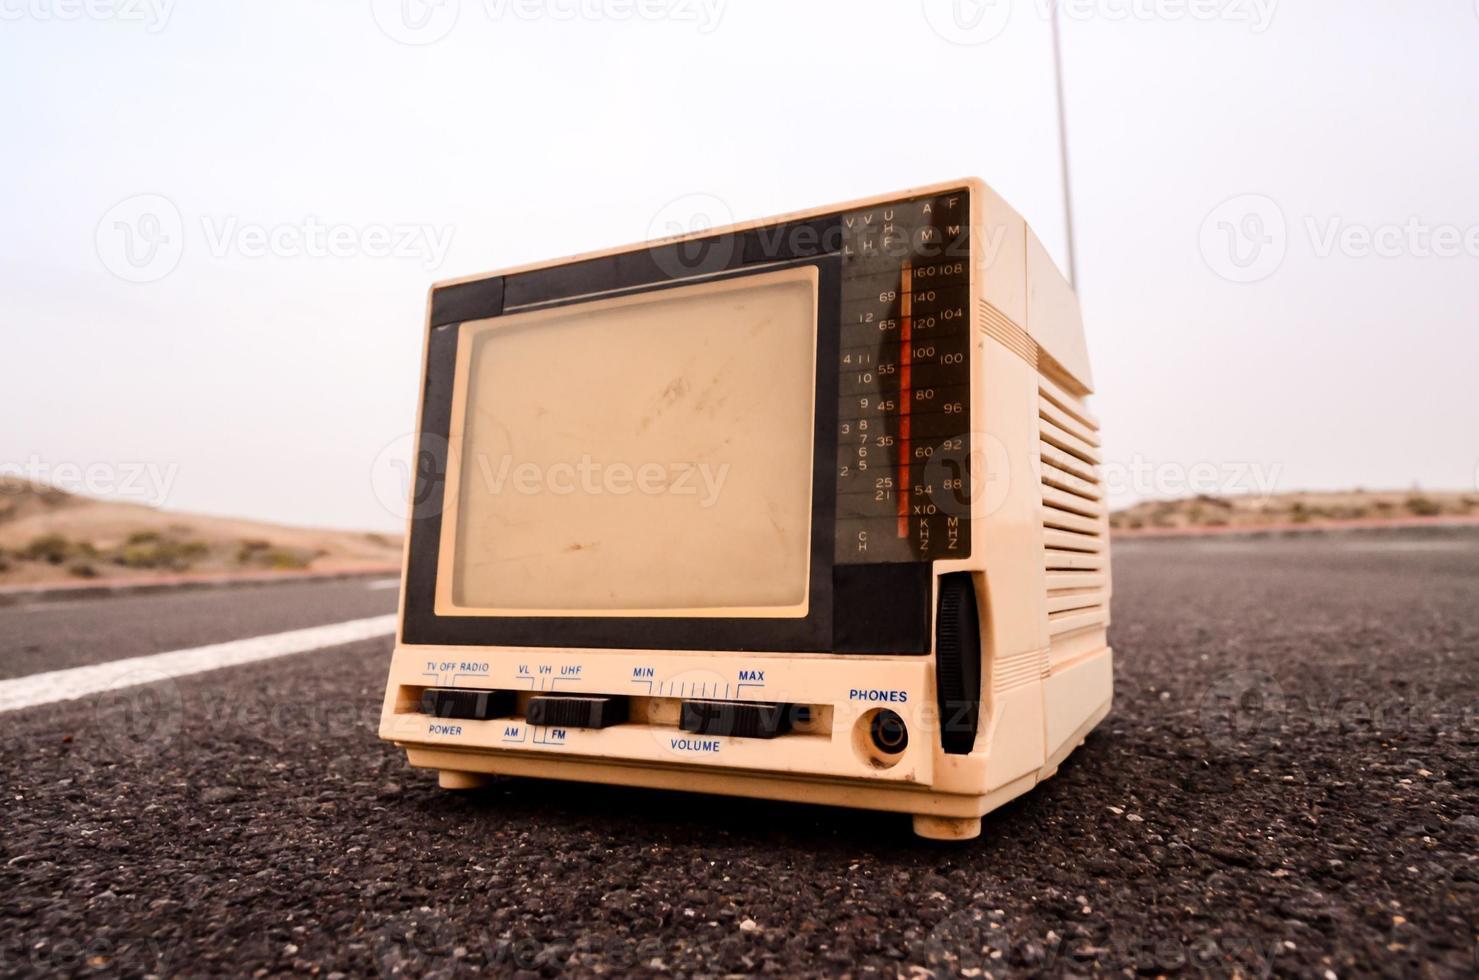 Vintage-Fernseher auf der Straße foto